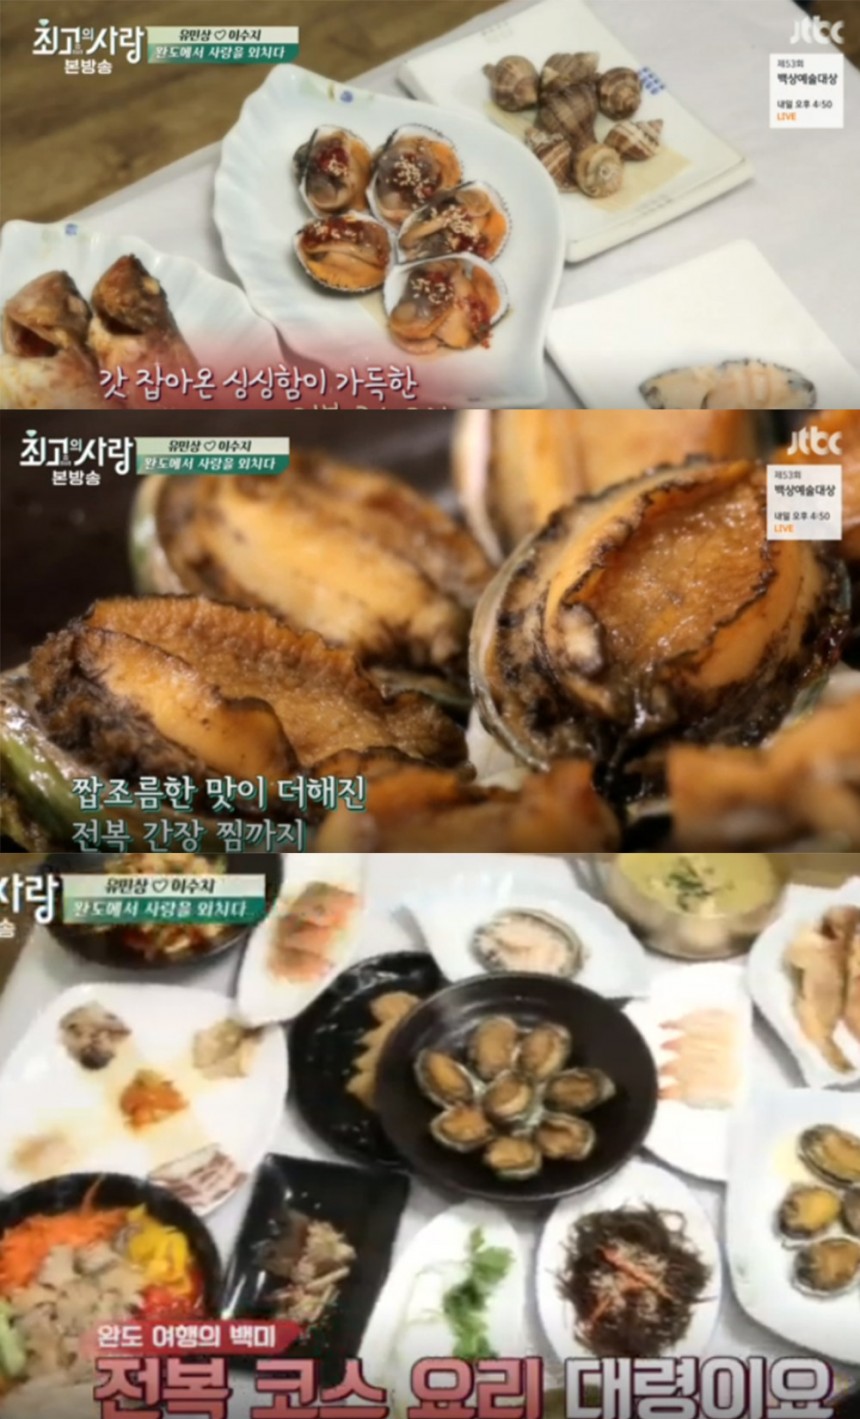 ‘님과 함께 시즌2’ 방송 화면 / JTBC ‘님과 함께 시즌2’ 방송 캡처